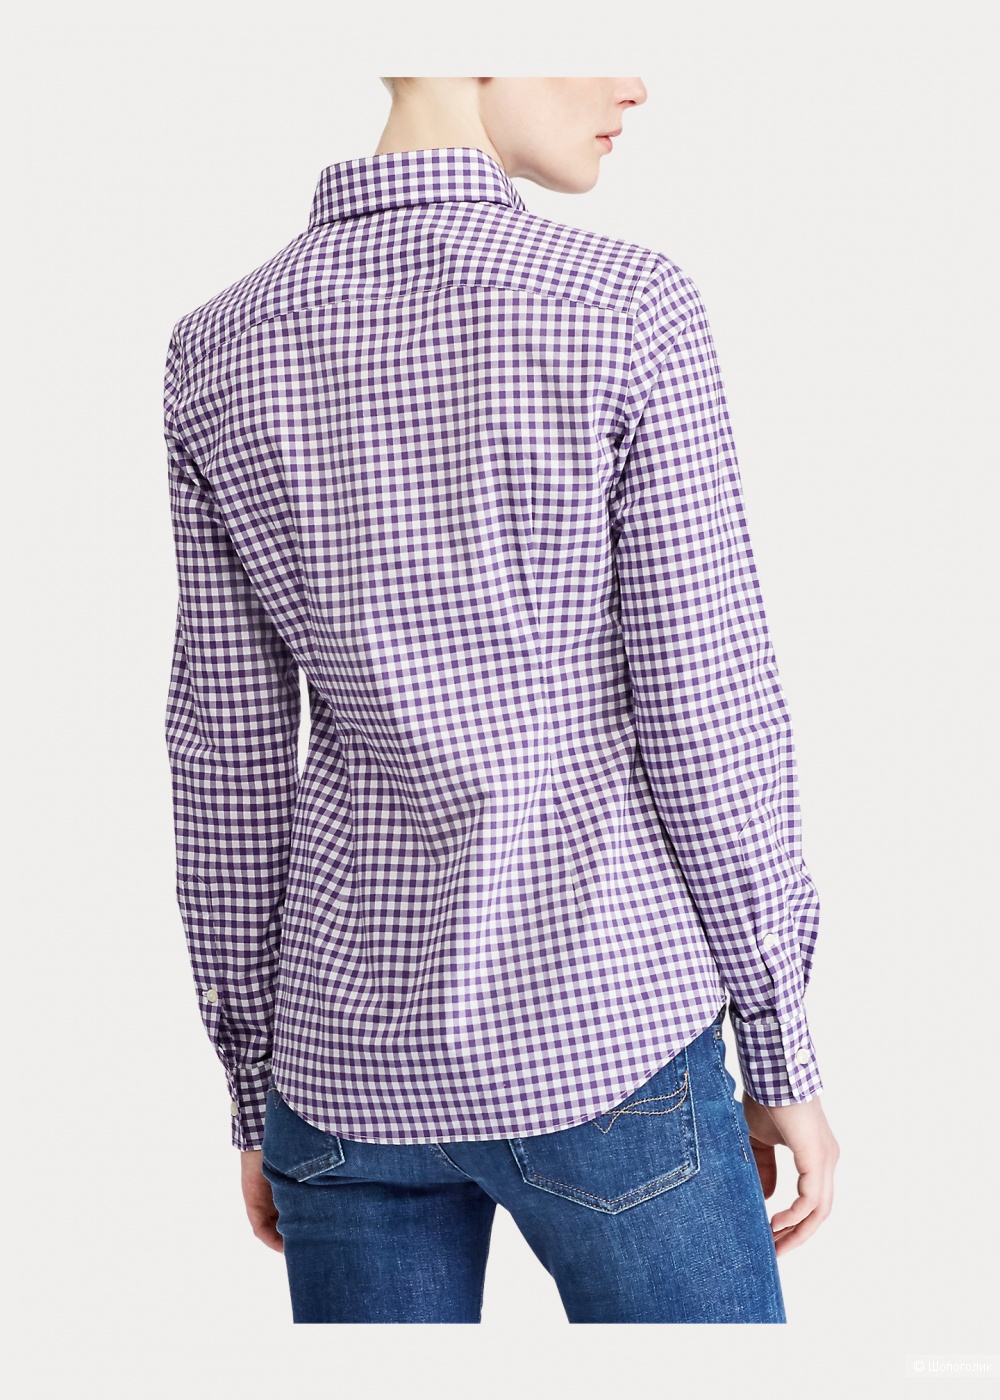 Рубашка Ralph Lauren, размер US 12